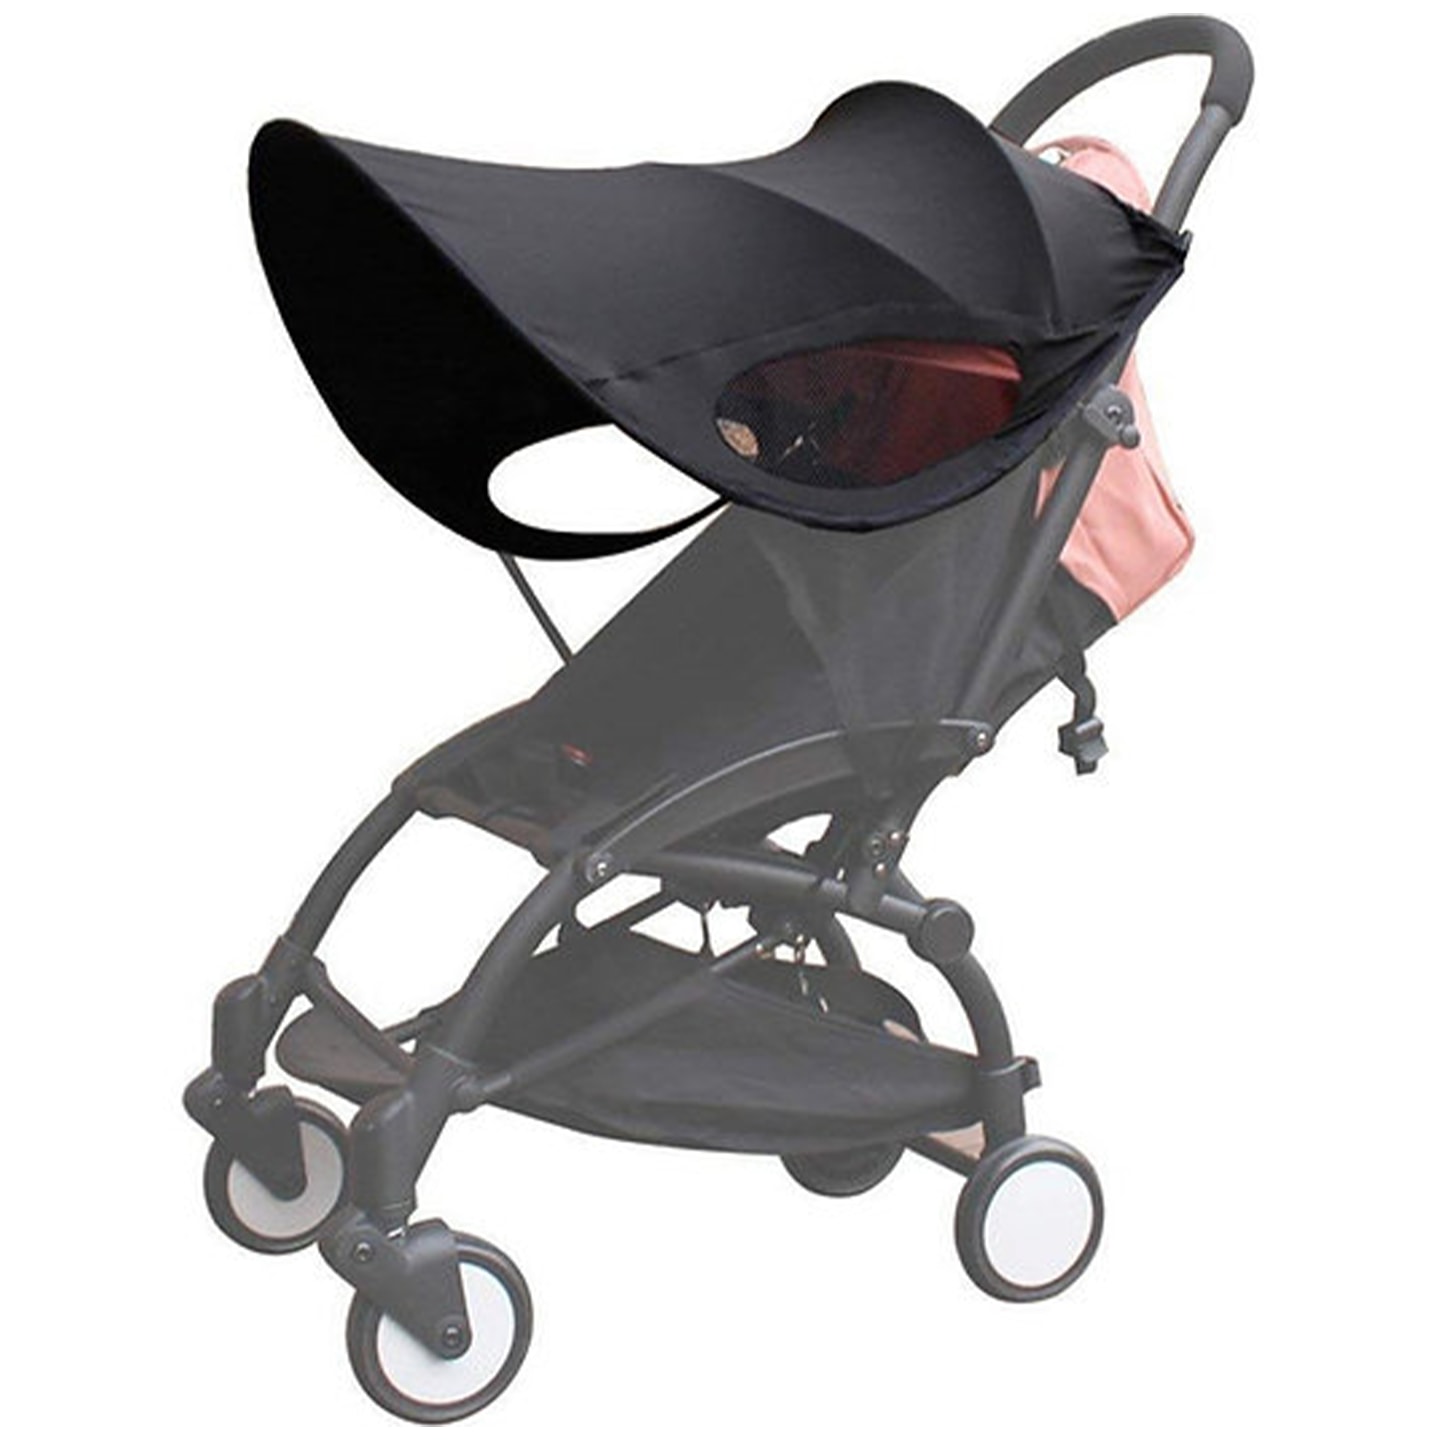 Solskydd för barnvagn till sittdel (1 av 4)